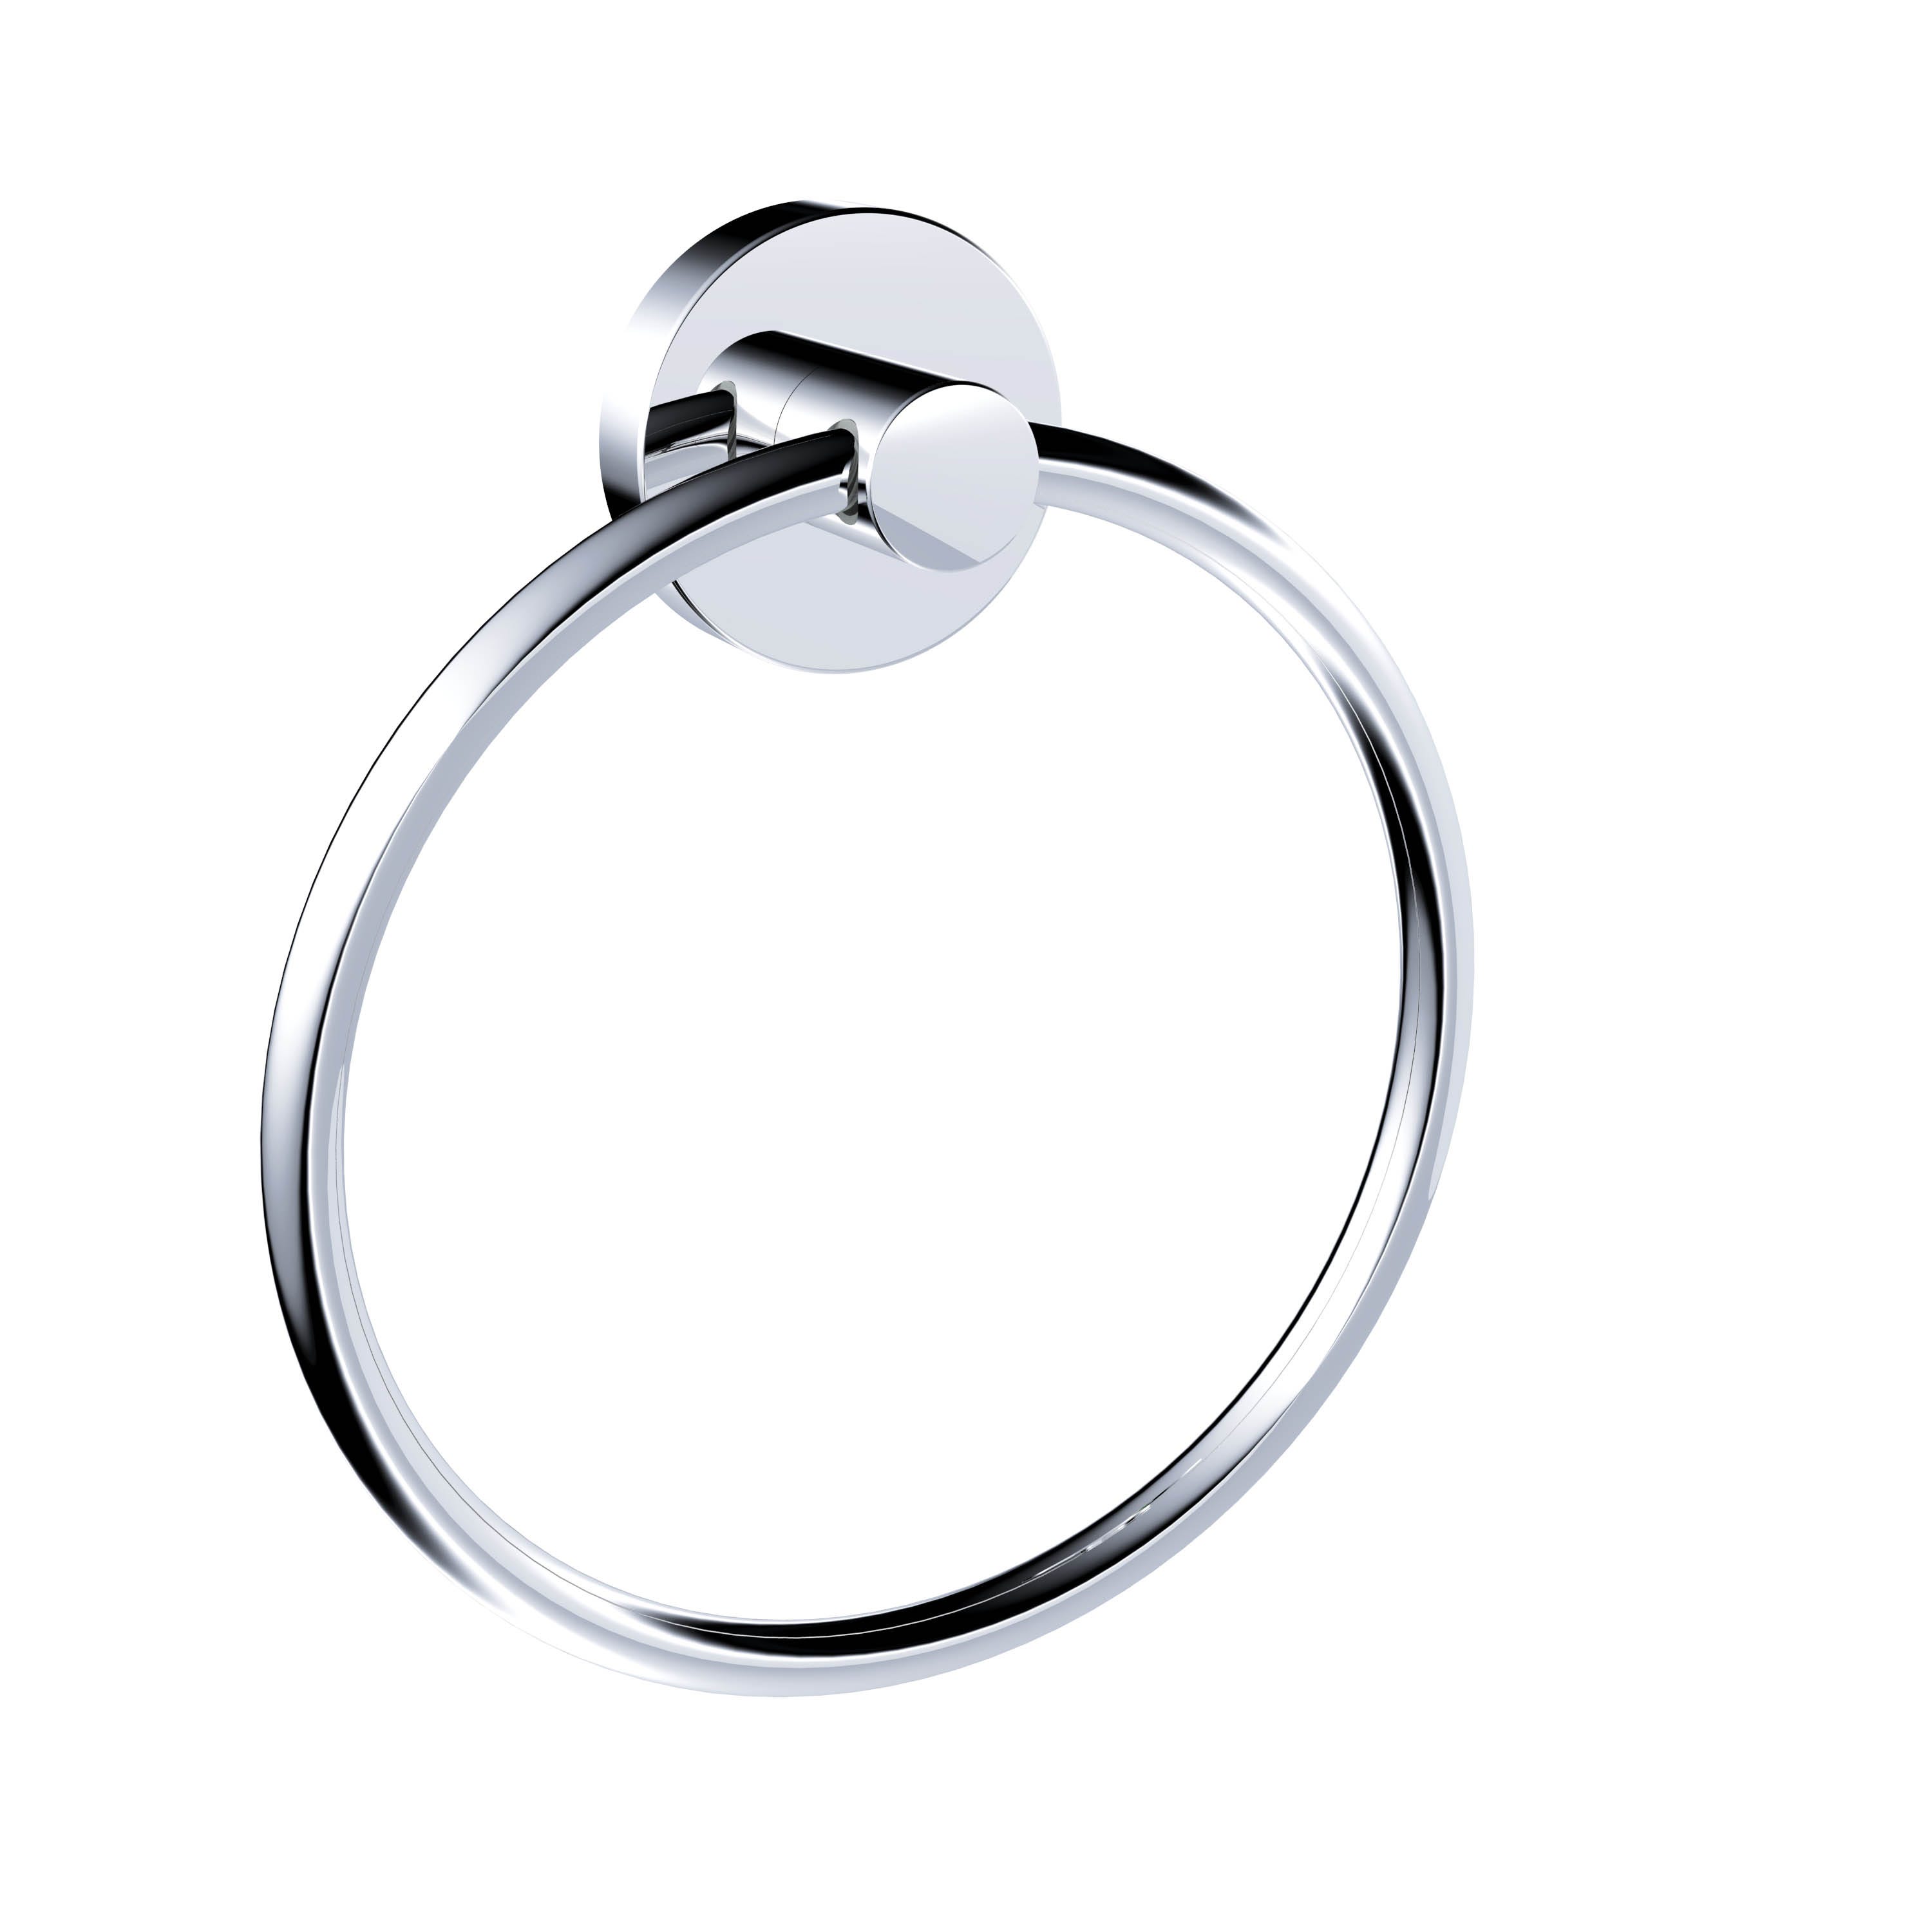 Porta salviette ad anello Style argento cromo lucido, L 37 cm